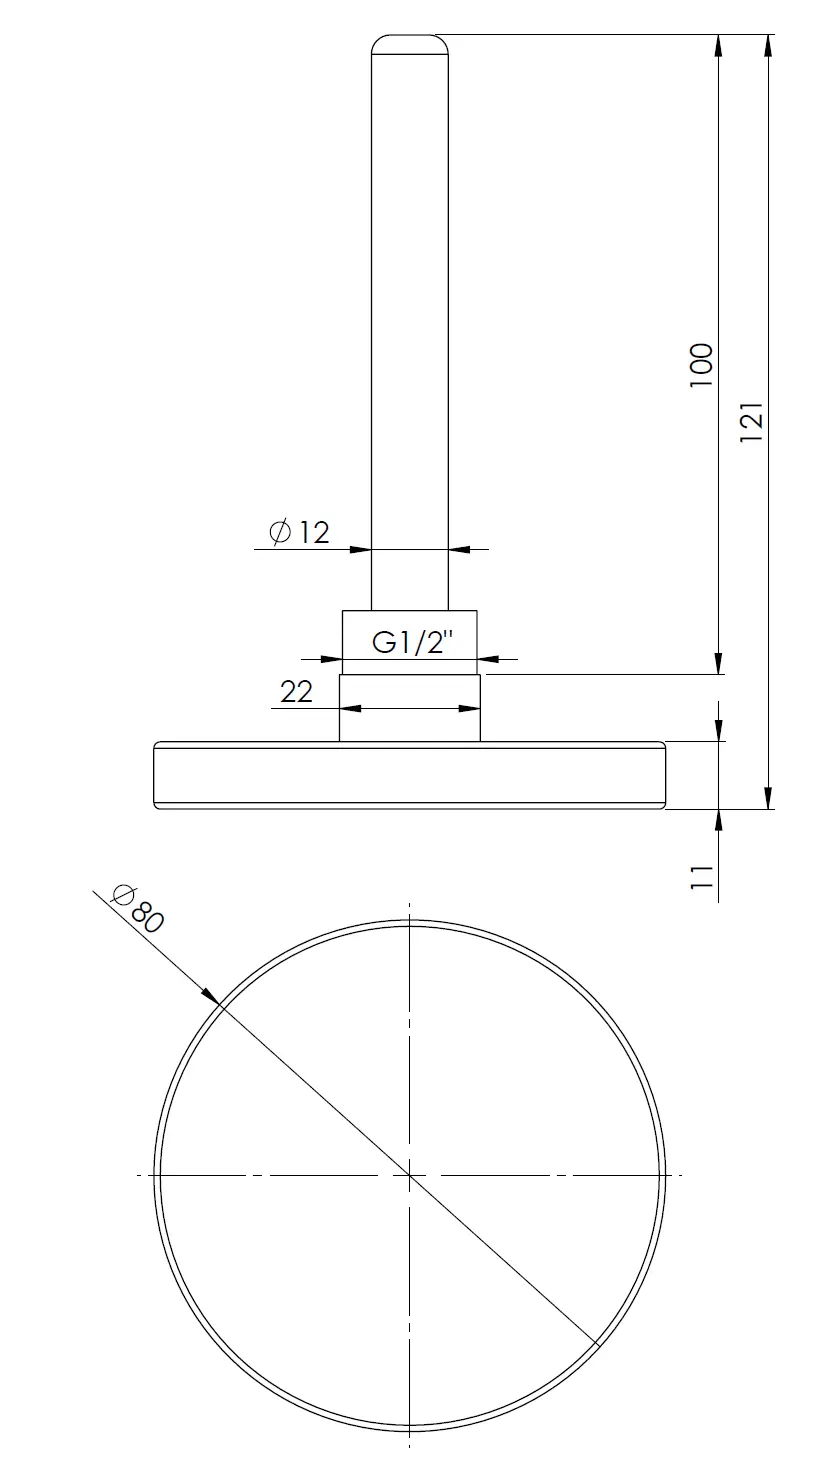 Termometr bimetaliczny BiTh 80, fi80 mm, 0÷60°C, L 100 mm, G1/2", ax, kl. 2 - budowa